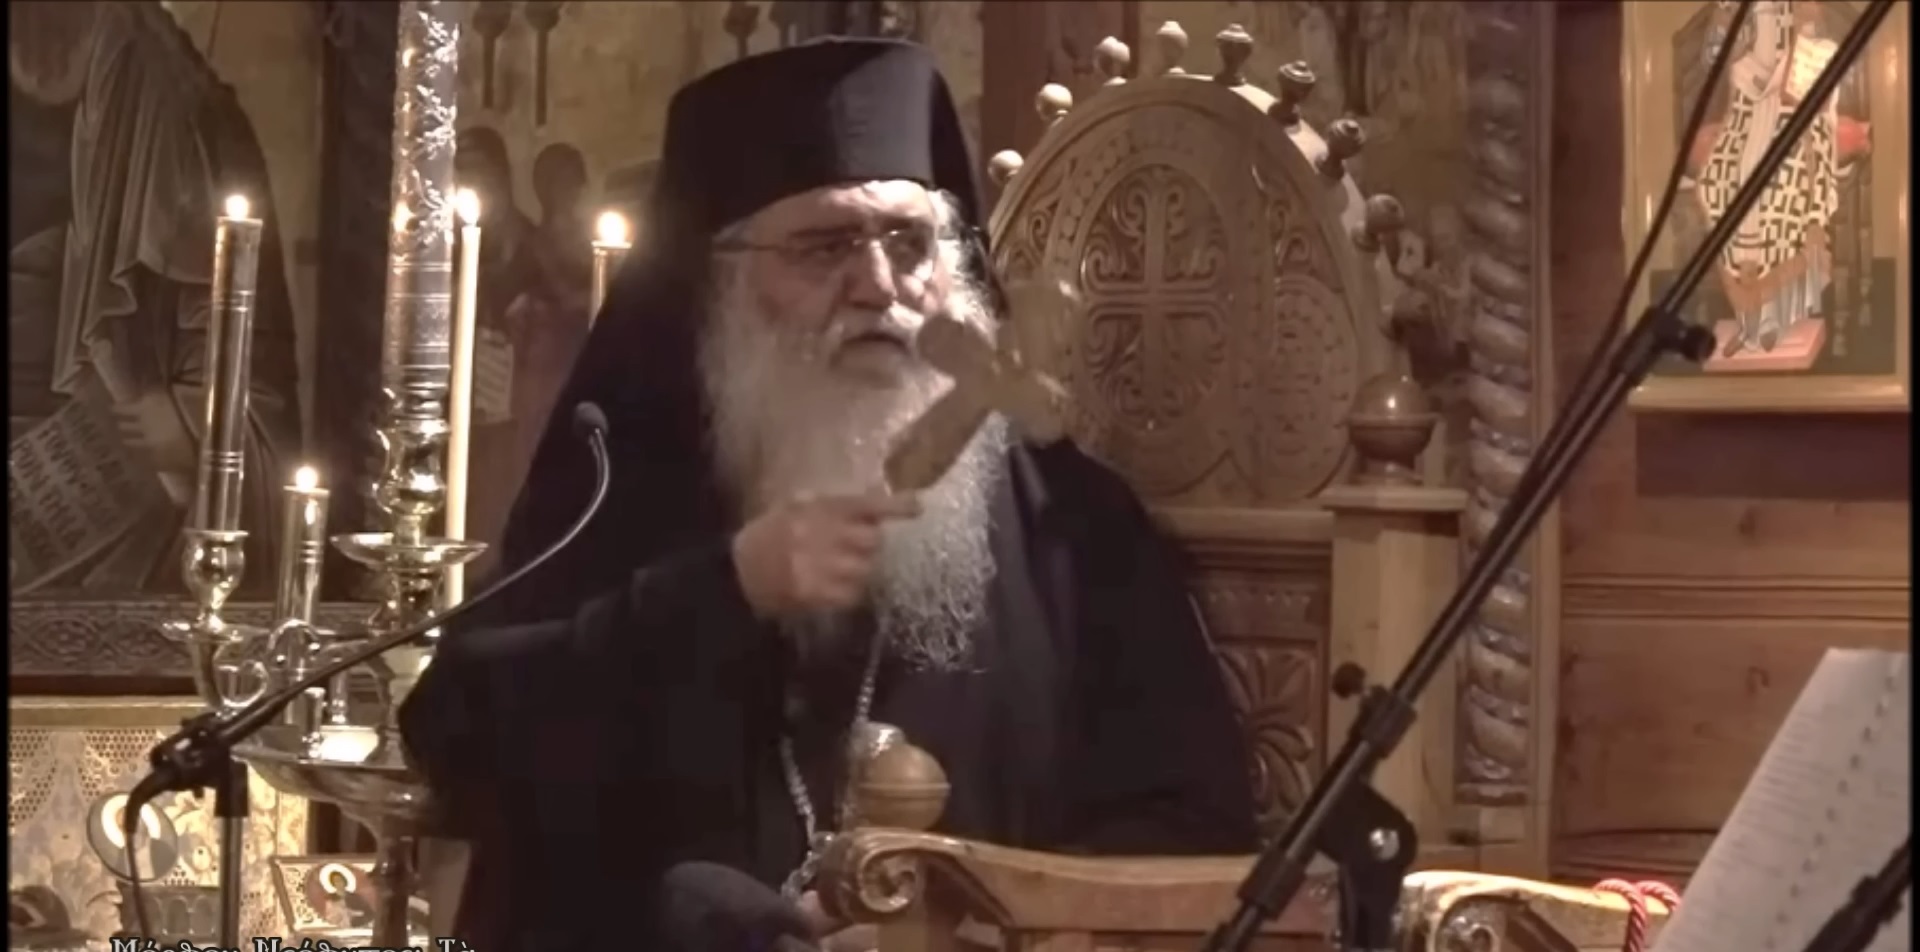 Κύπρος: «Δαιμονικές δυνάμεις» «βλέπει» πίσω από τα σκάνδαλα της Μονής Αββακούμ ο Μητροπολίτης Μόρφου